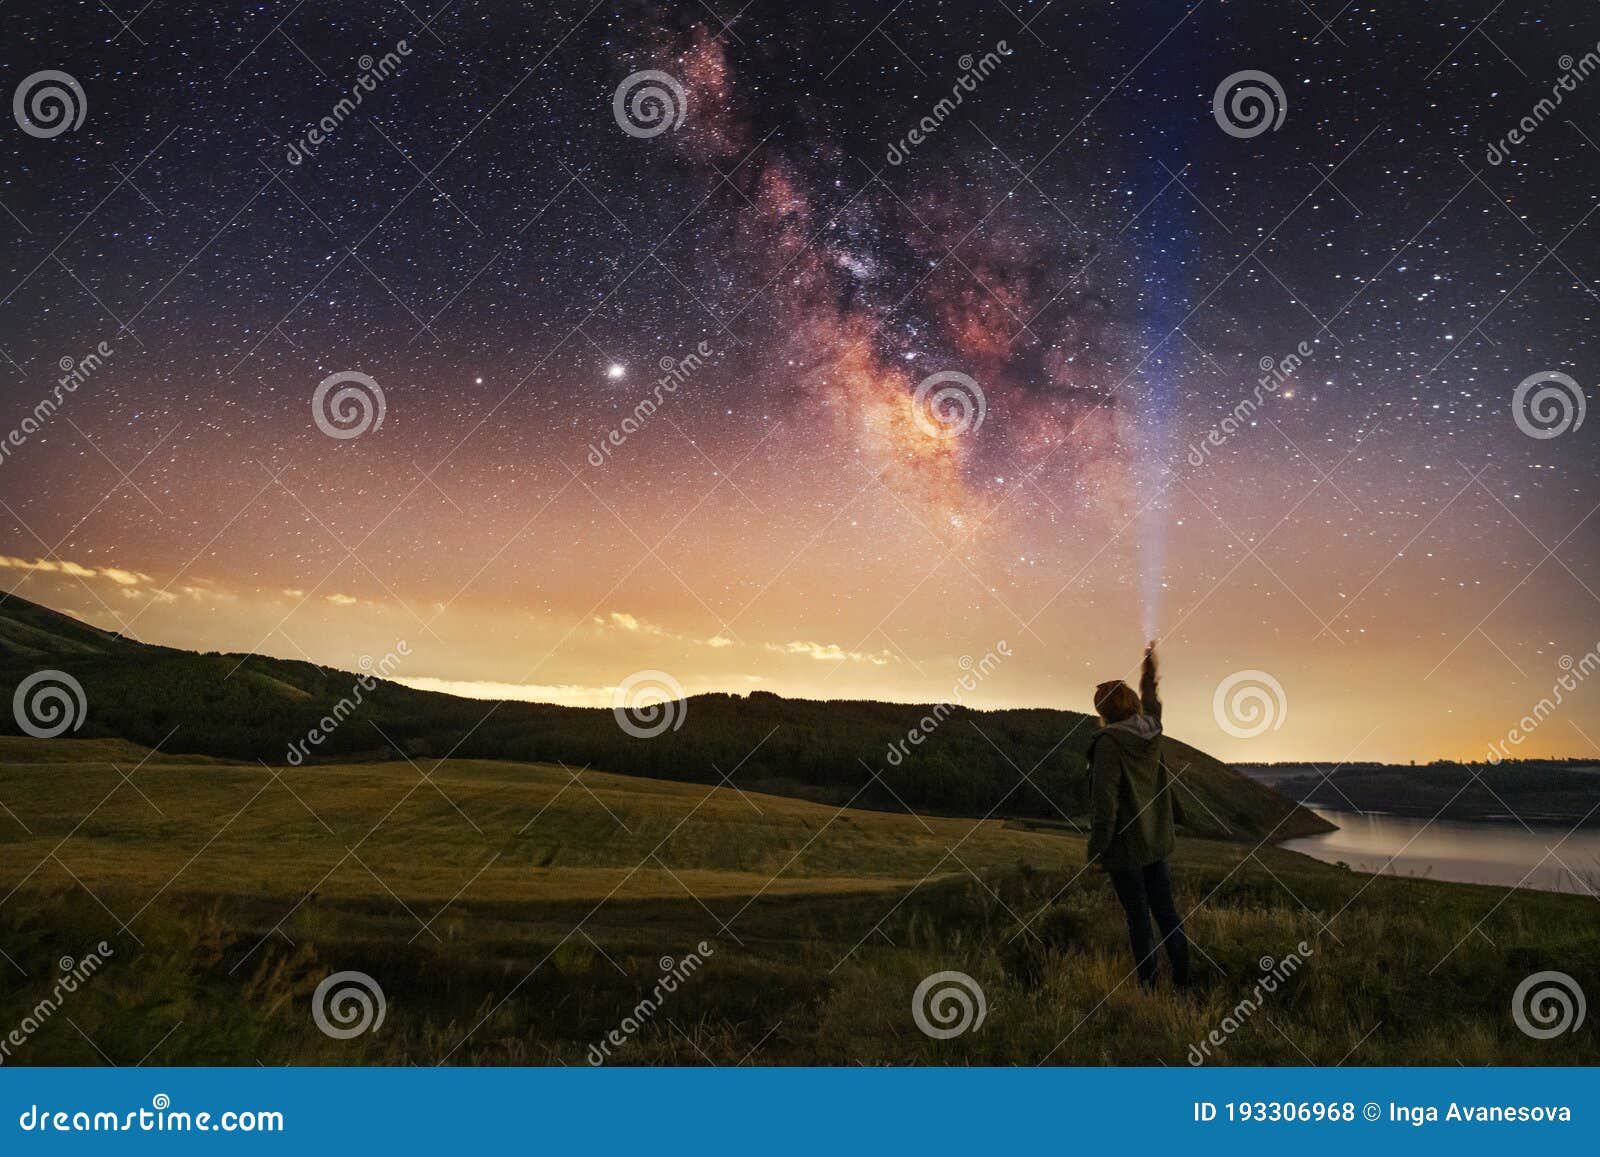 银河系的美丽星空 夜景 闪着闪光灯的人影 库存照片 图片包括有星云 本质 晚上 展望期